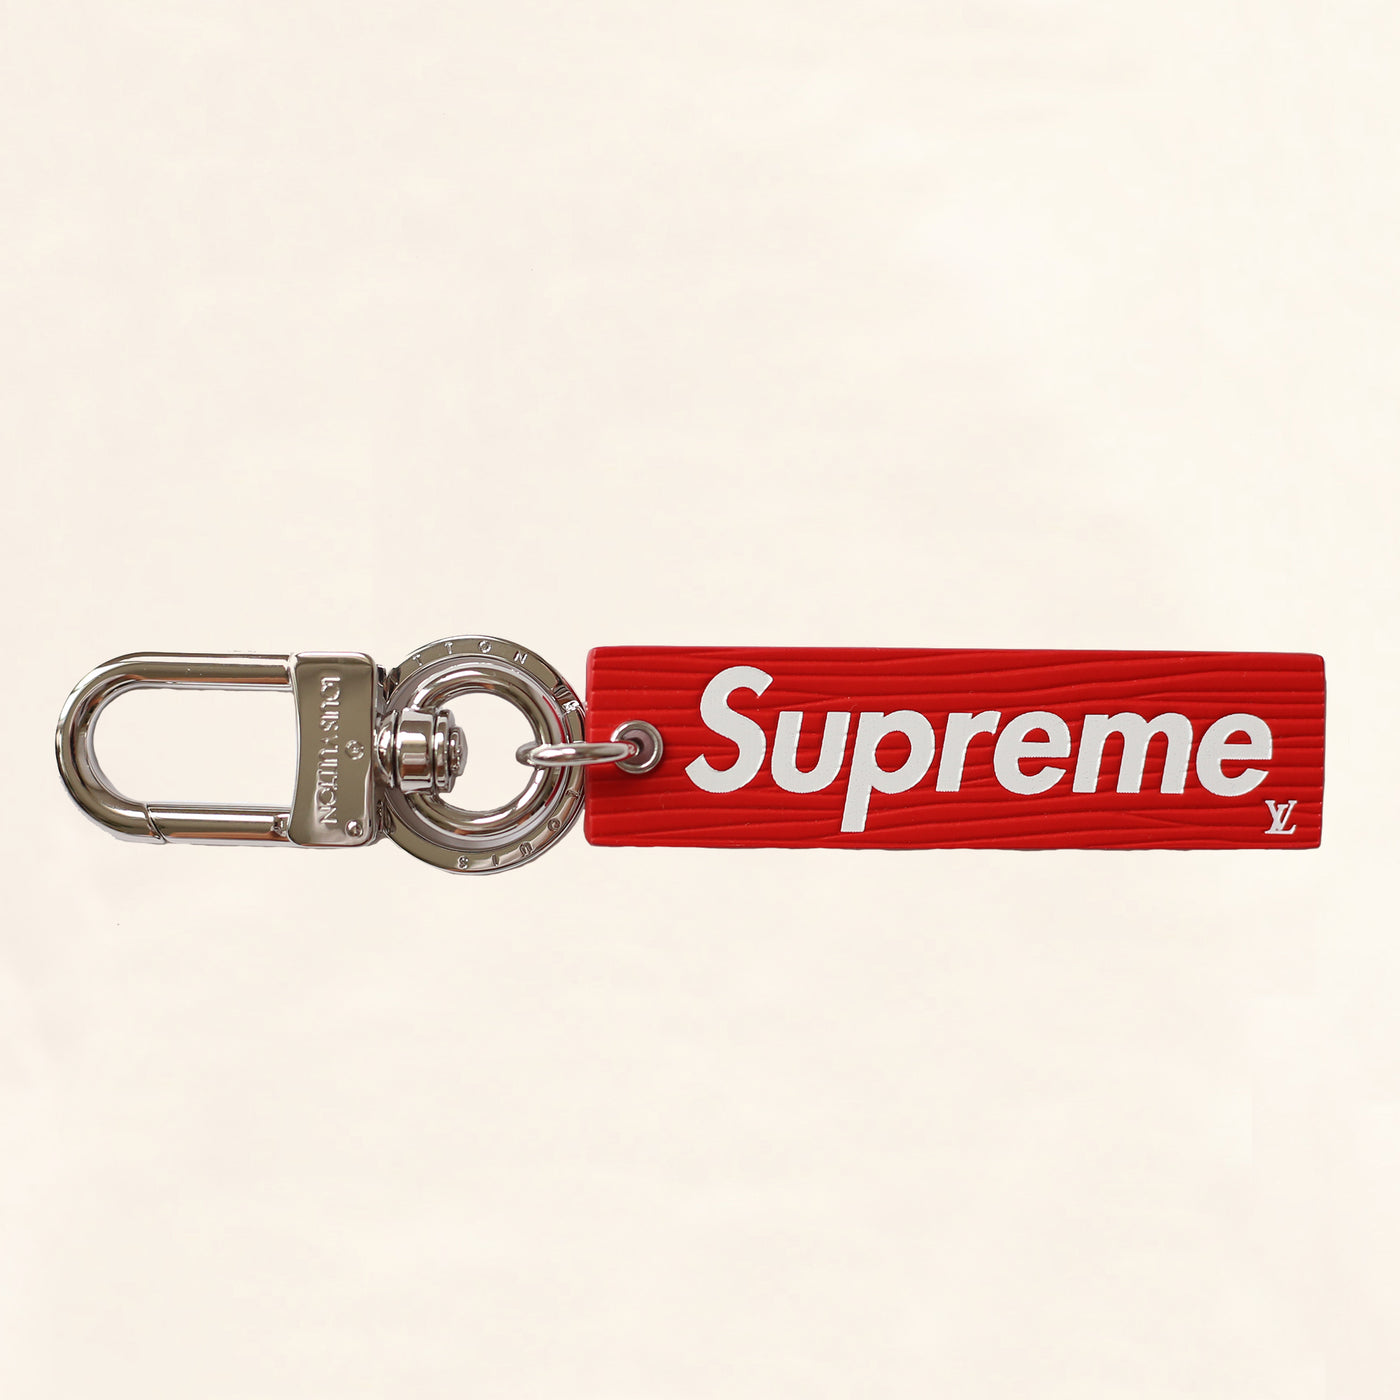 supreme lv box logo hoodie